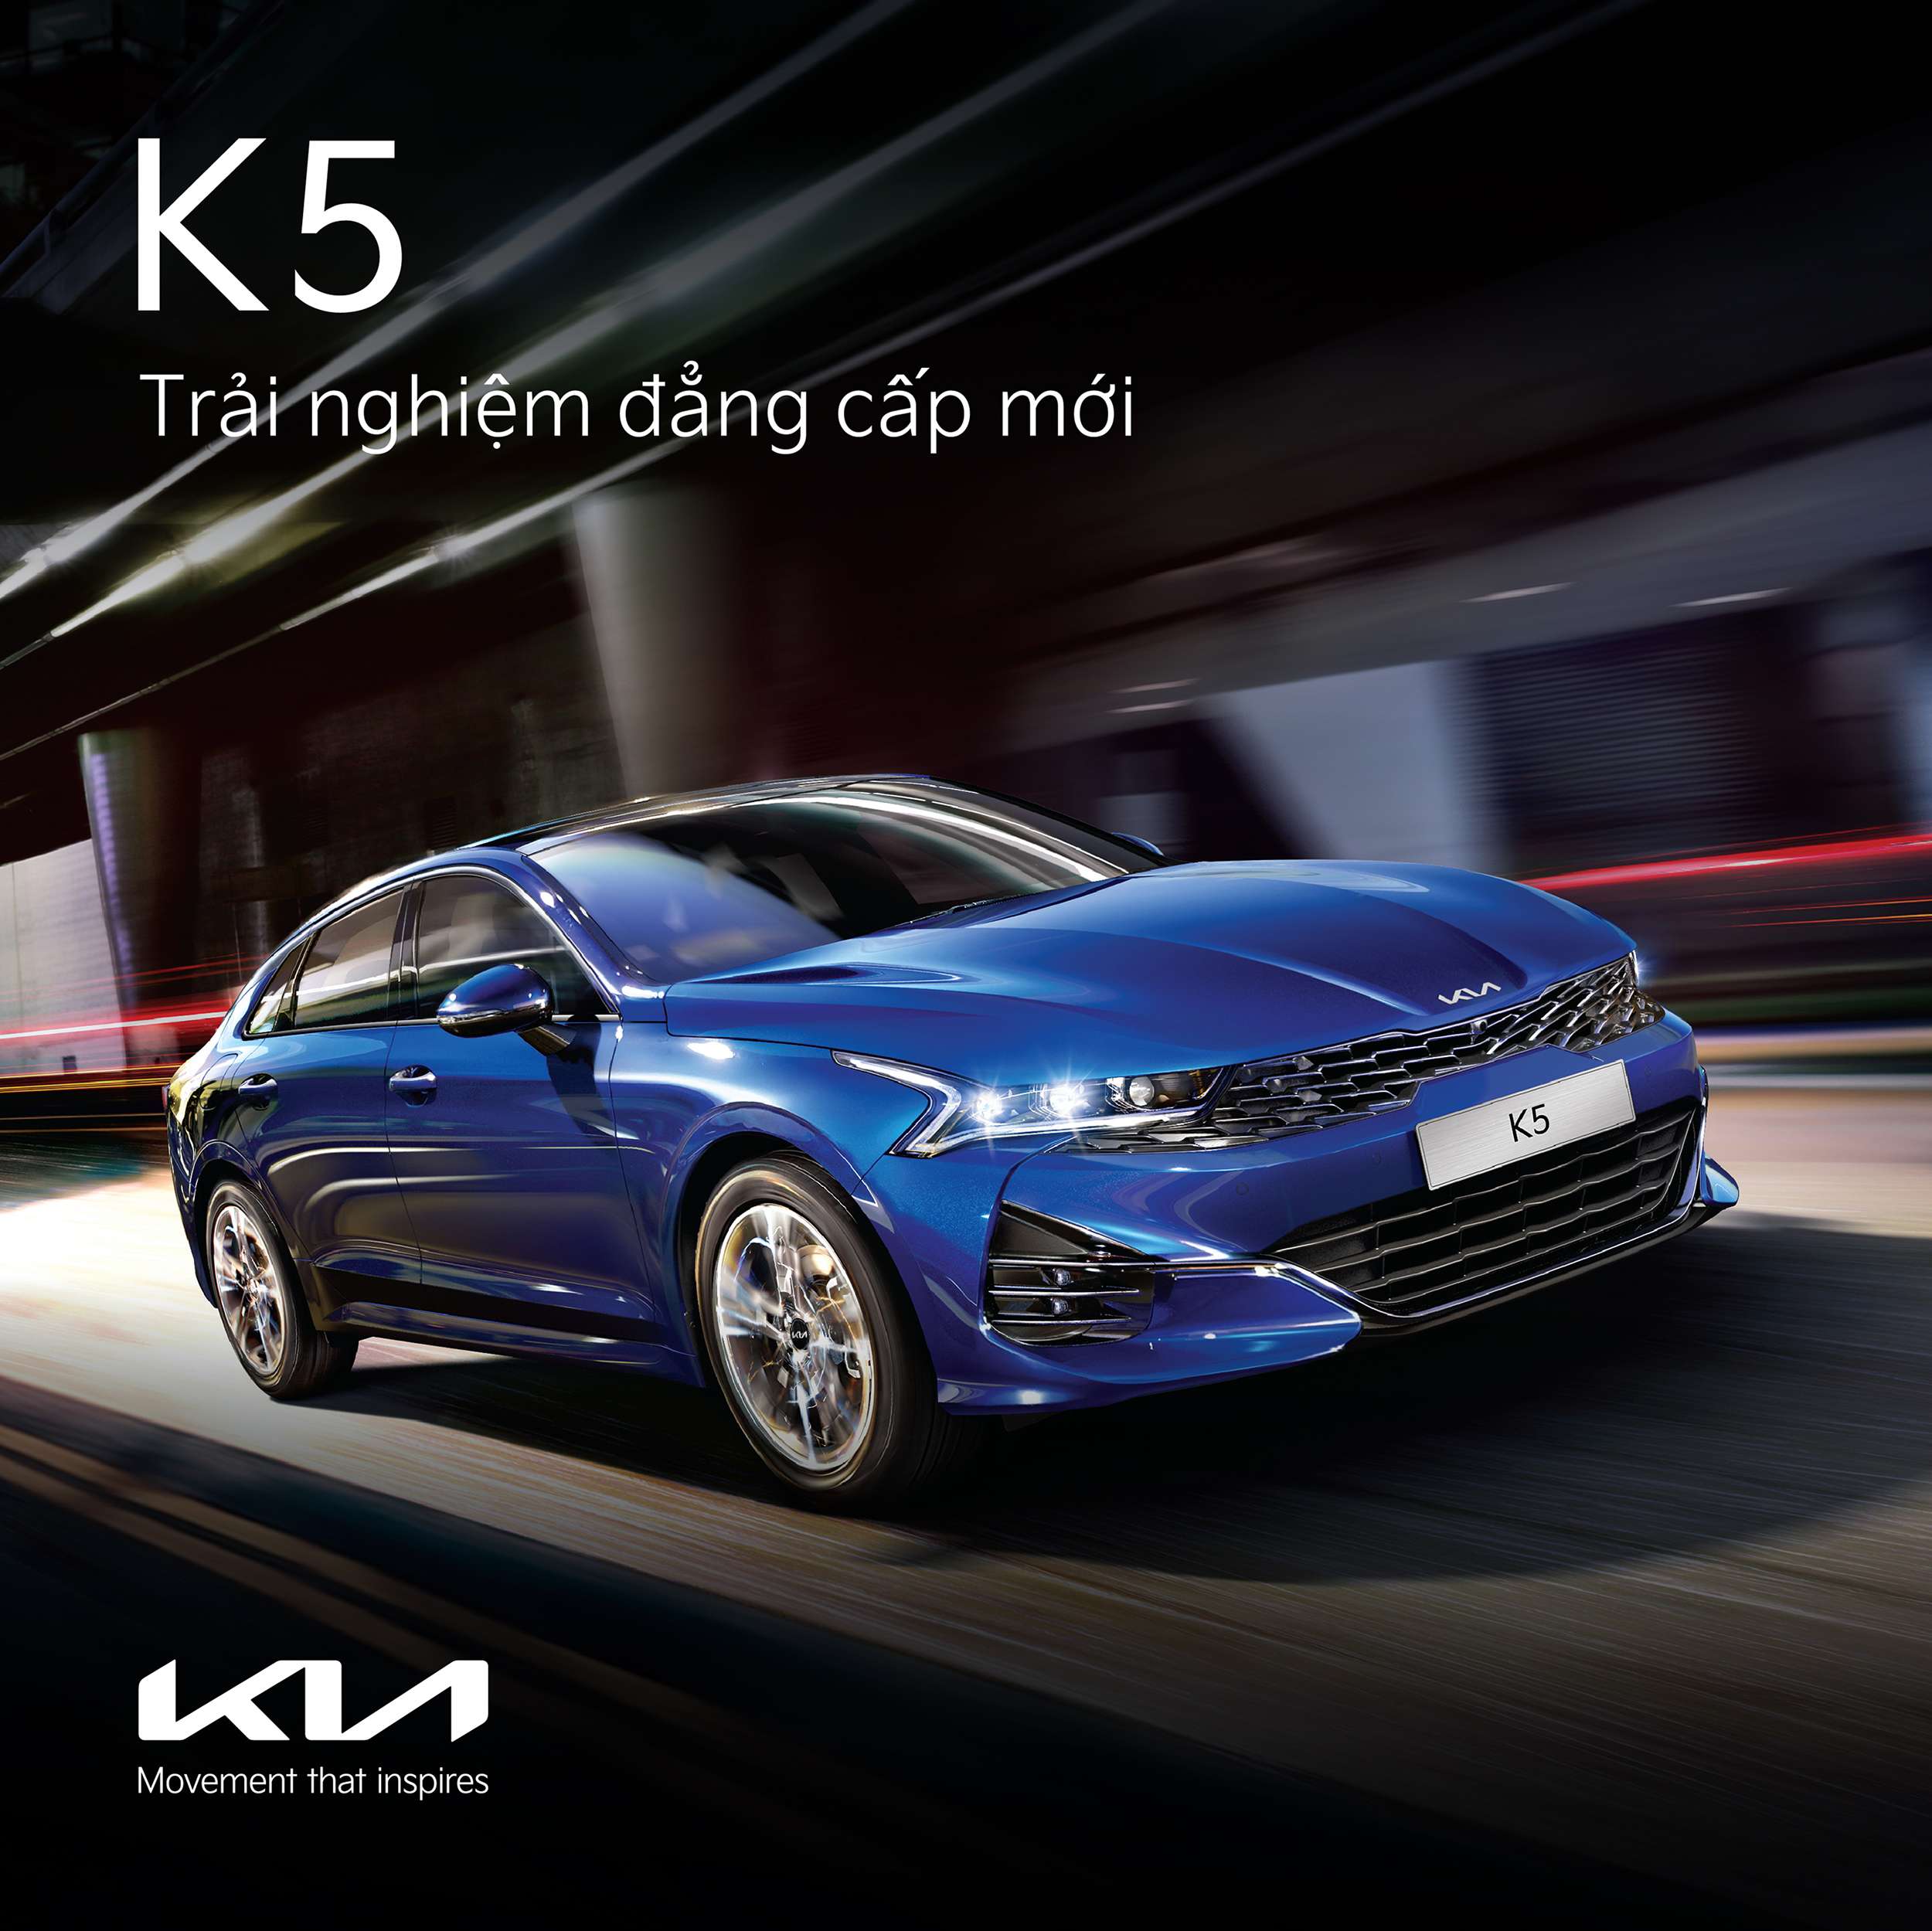 Kia K5 mang đến sự sang trọng, tiện nghi và khả năng vận hành mạnh mẽ cho người lái. Xem ảnh và cảm nhận vẻ đẹp hoàn hảo của chiếc xe này!